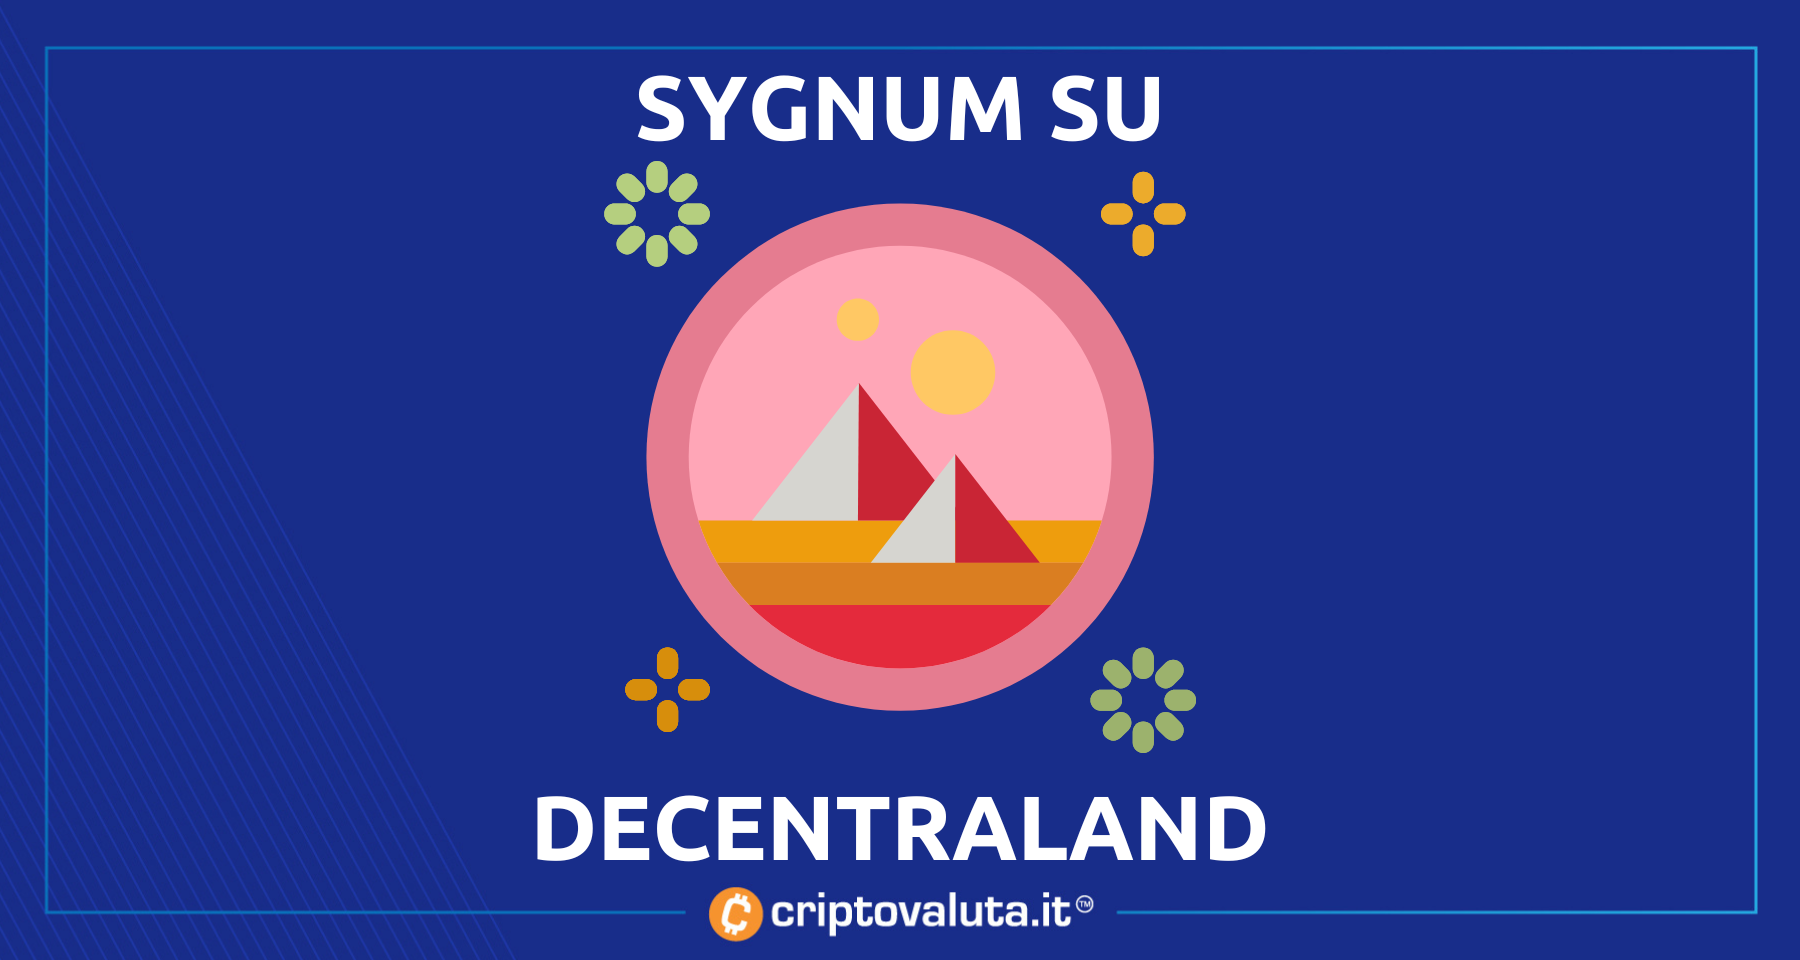 Banca crypto Sygnum sbarca sul metaverse | Sceglie Decentraland!